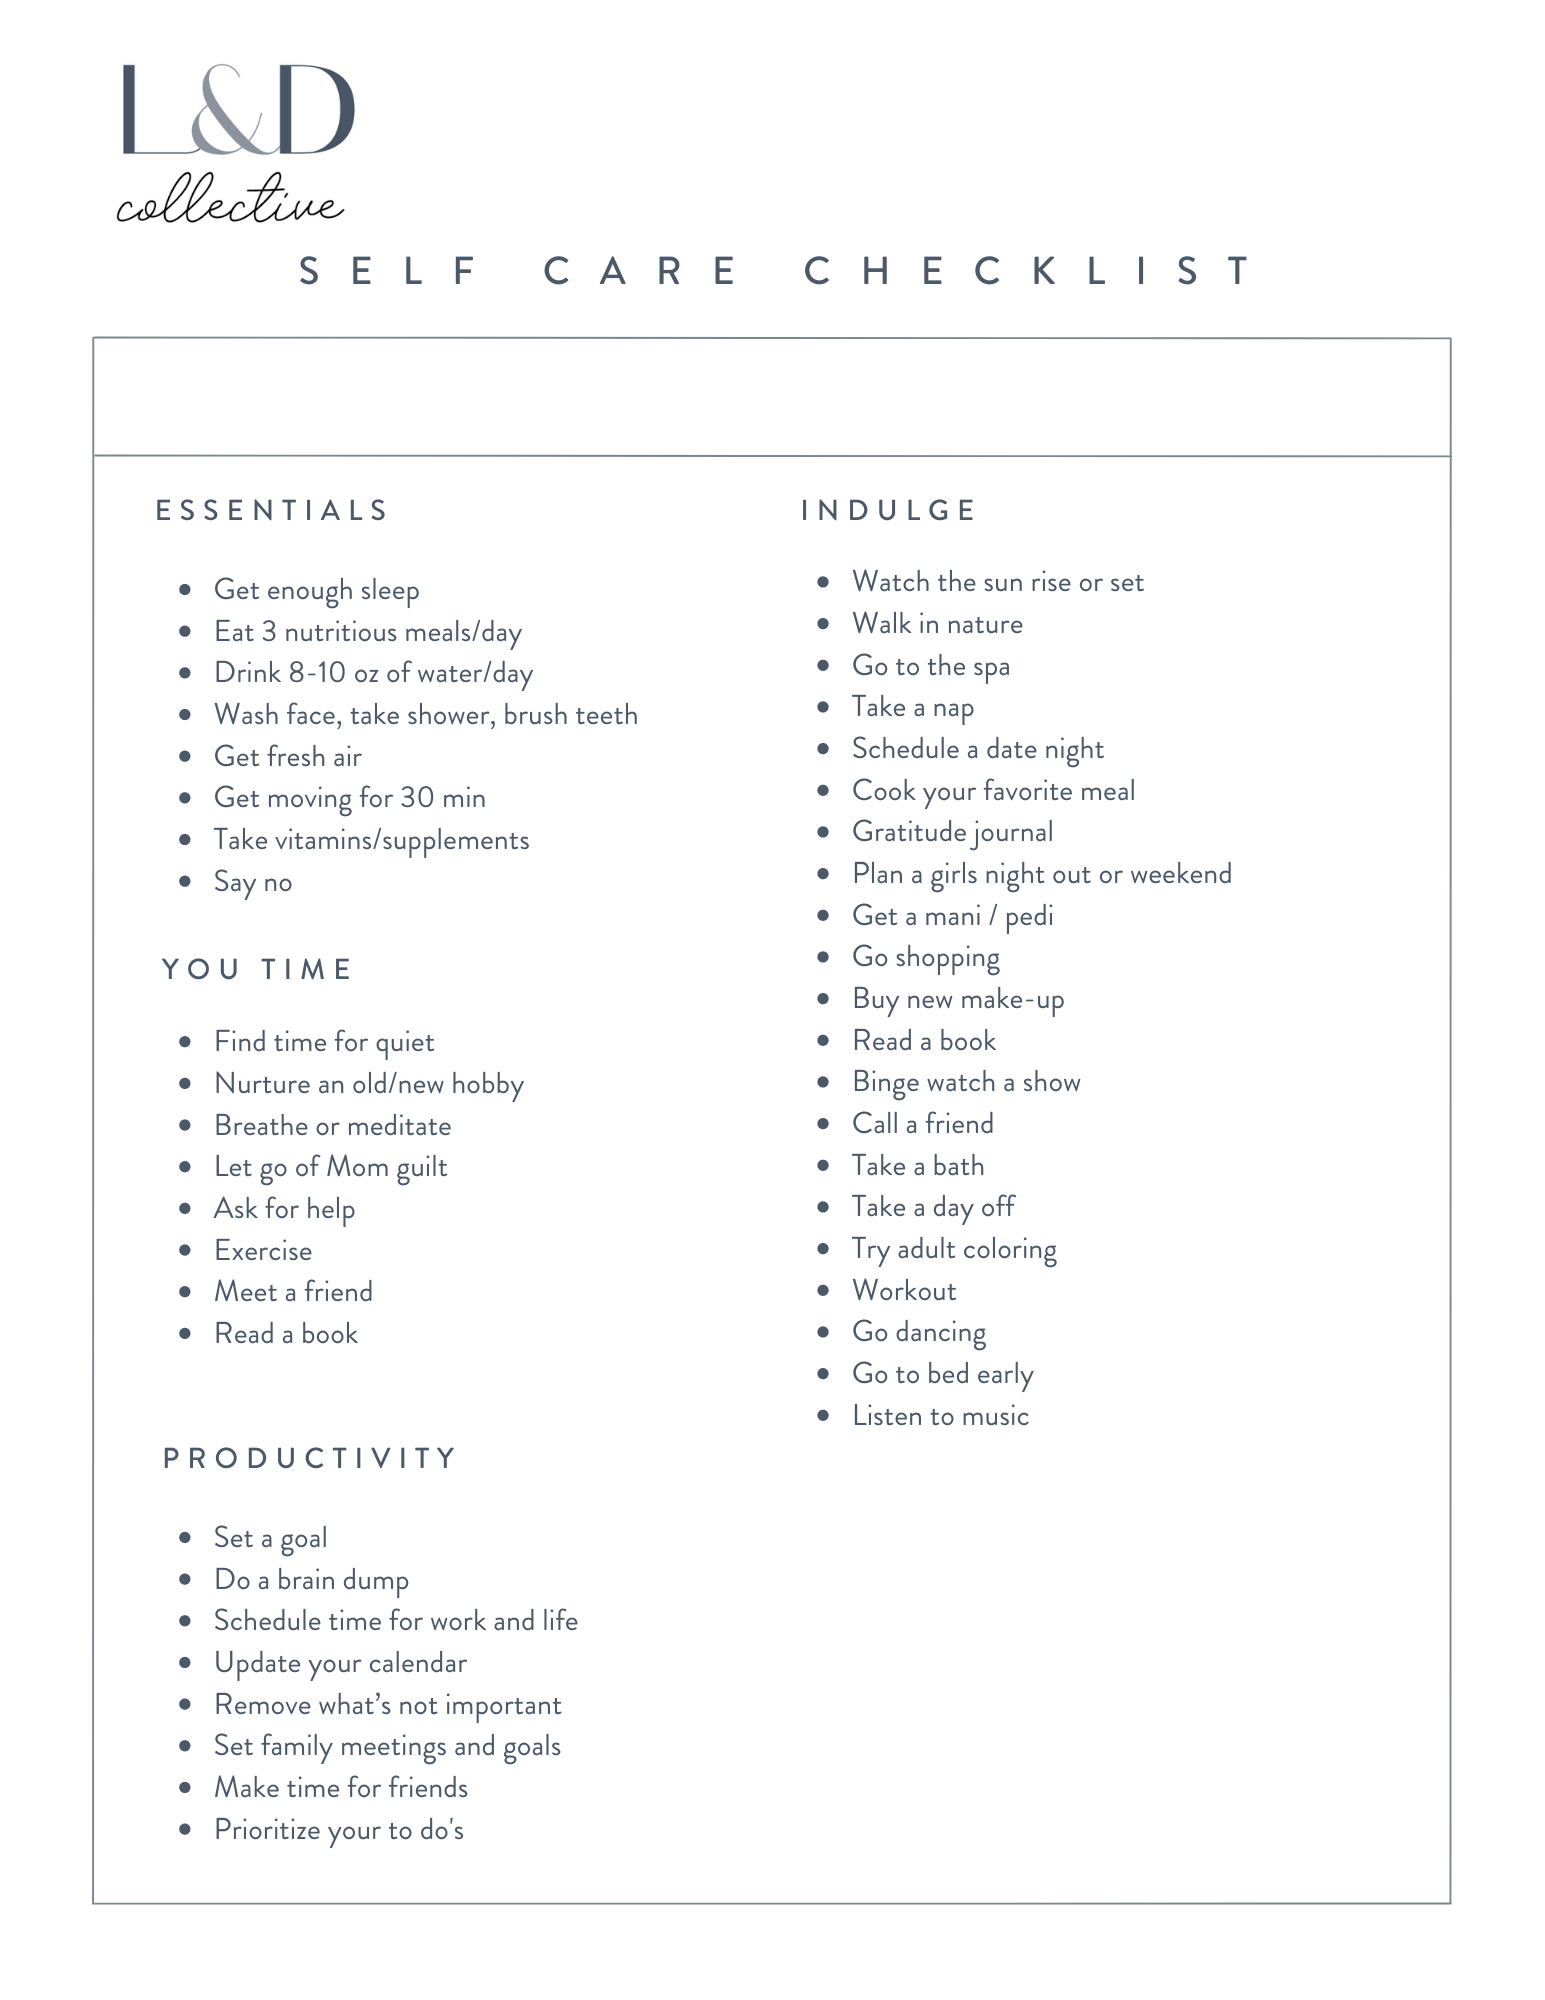 Your Self-Care Checklist – Loop & Dash